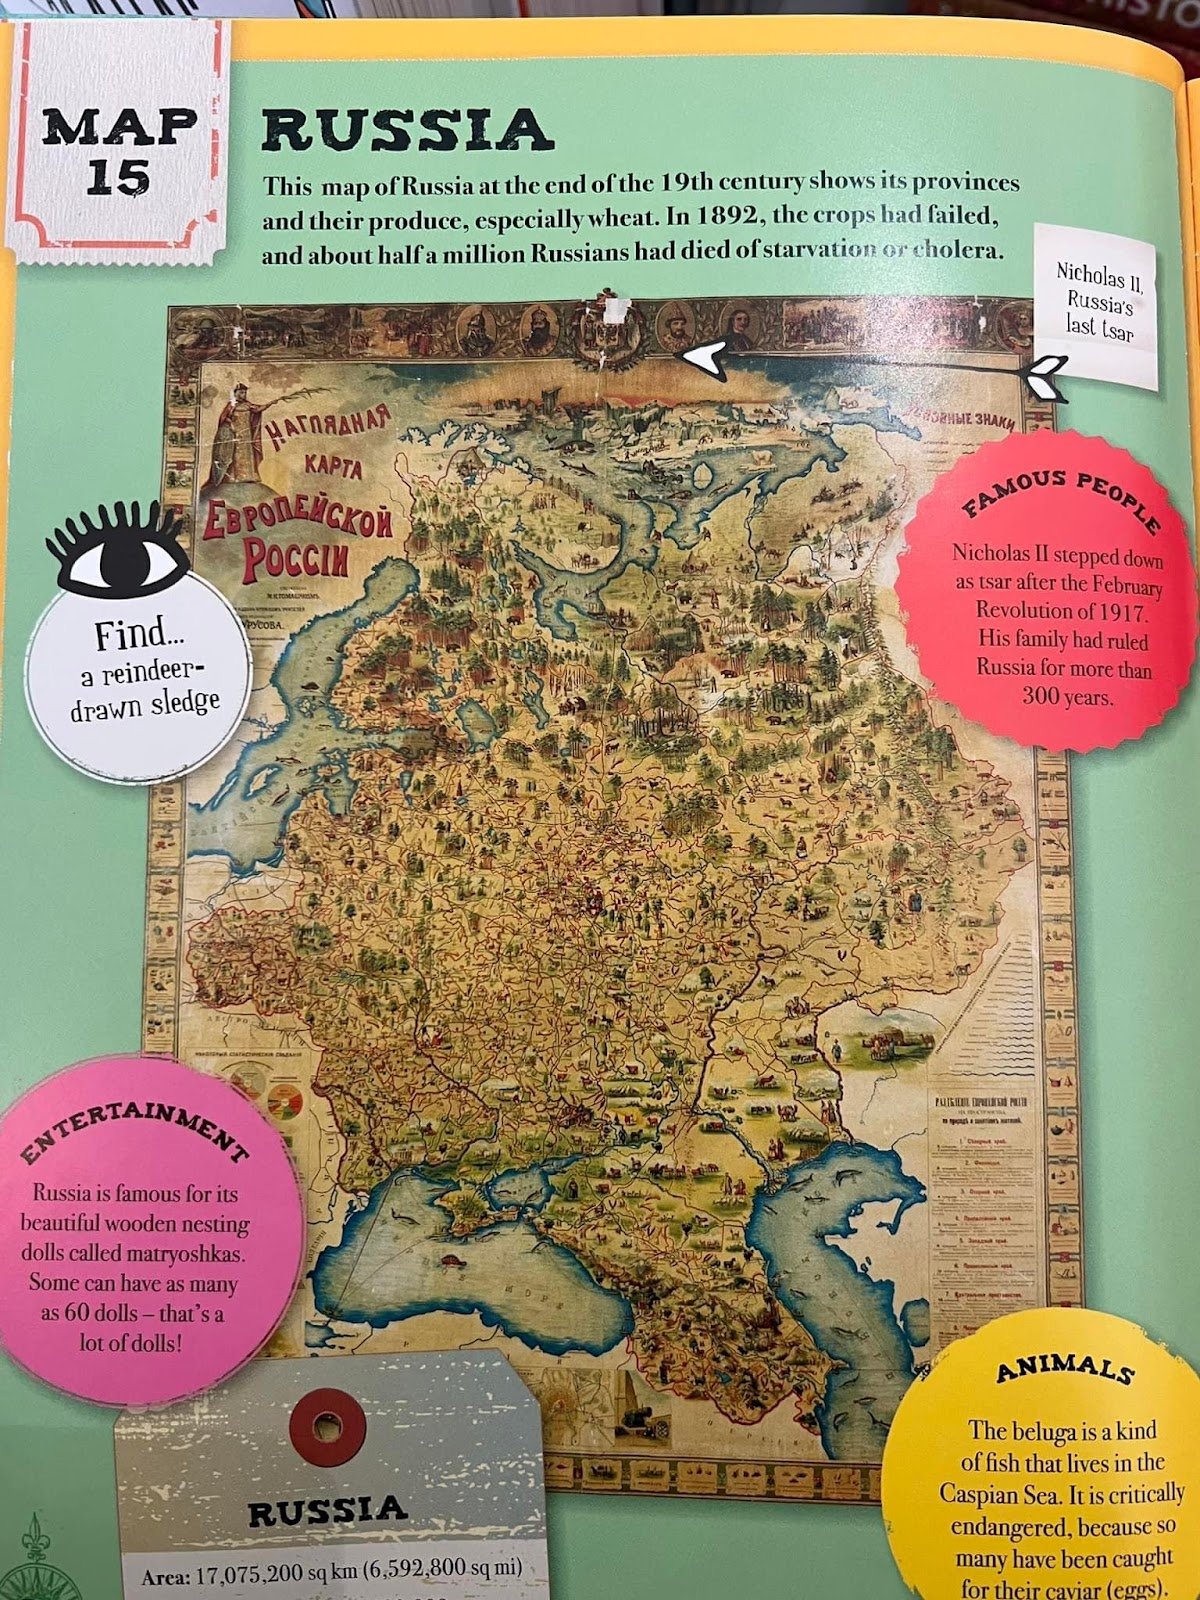 Як ось у книжці Clare Hibbert Around the world in 80 maps, яку видала Британська бібліотека. Навіть не замислюючись, яка важлива й чутлива ця тема зараз, іноземні автори наполегливо втягують Україну в імперський російський наратив